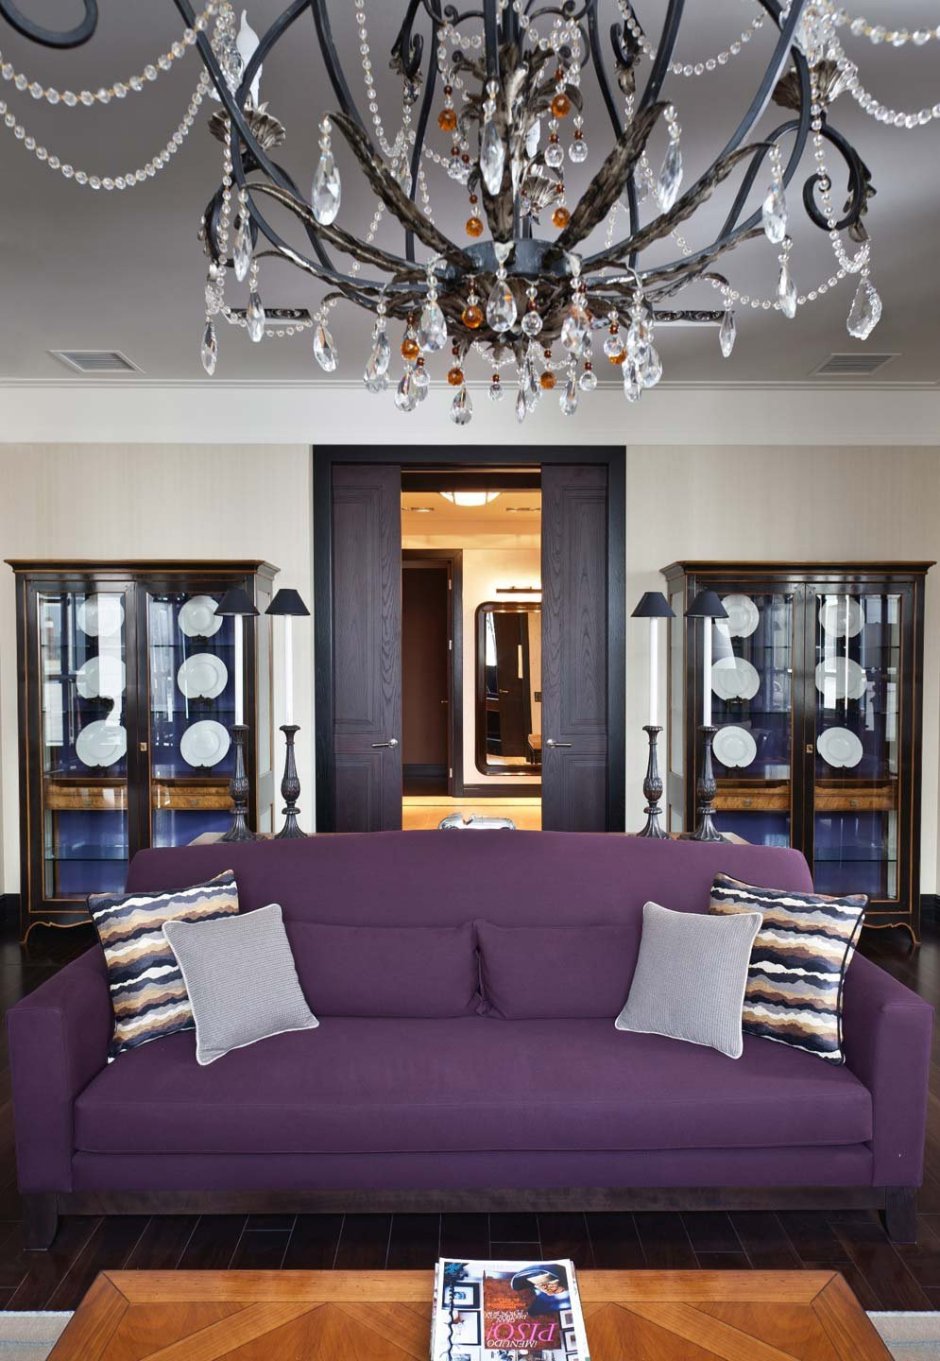 Гостиная с фиолетовым диваном